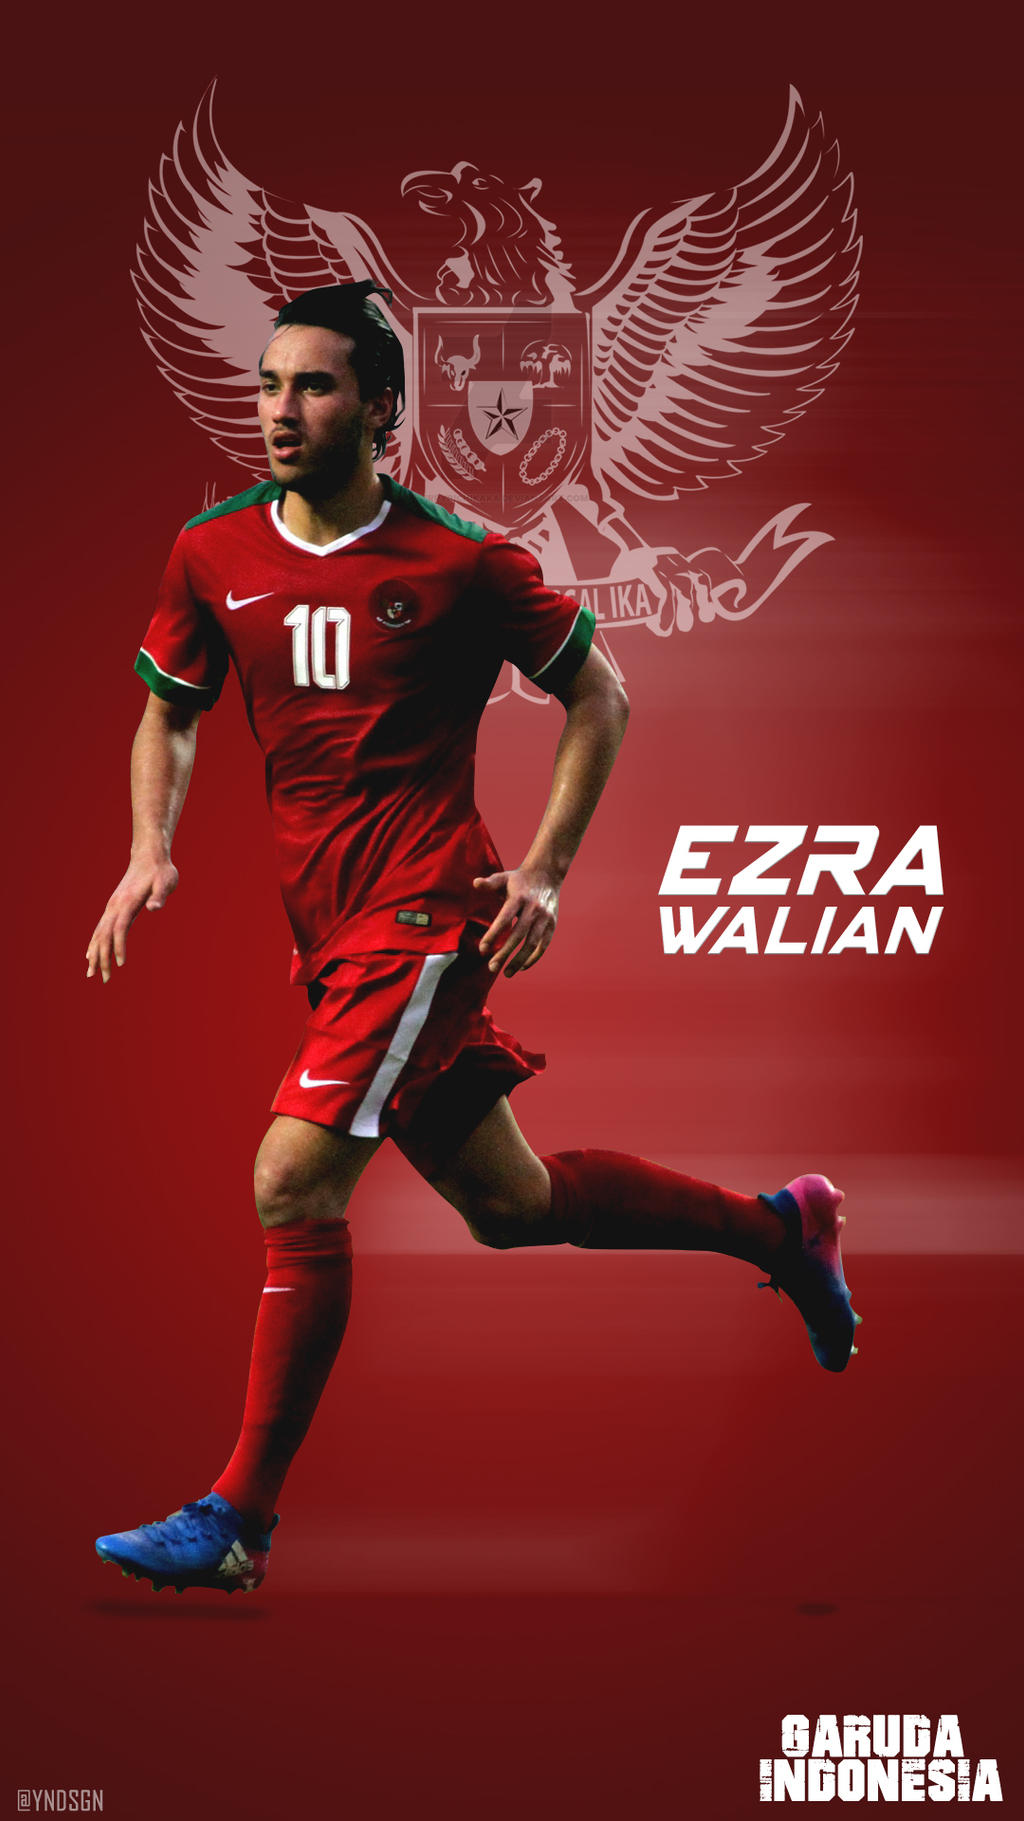 Ezra walian